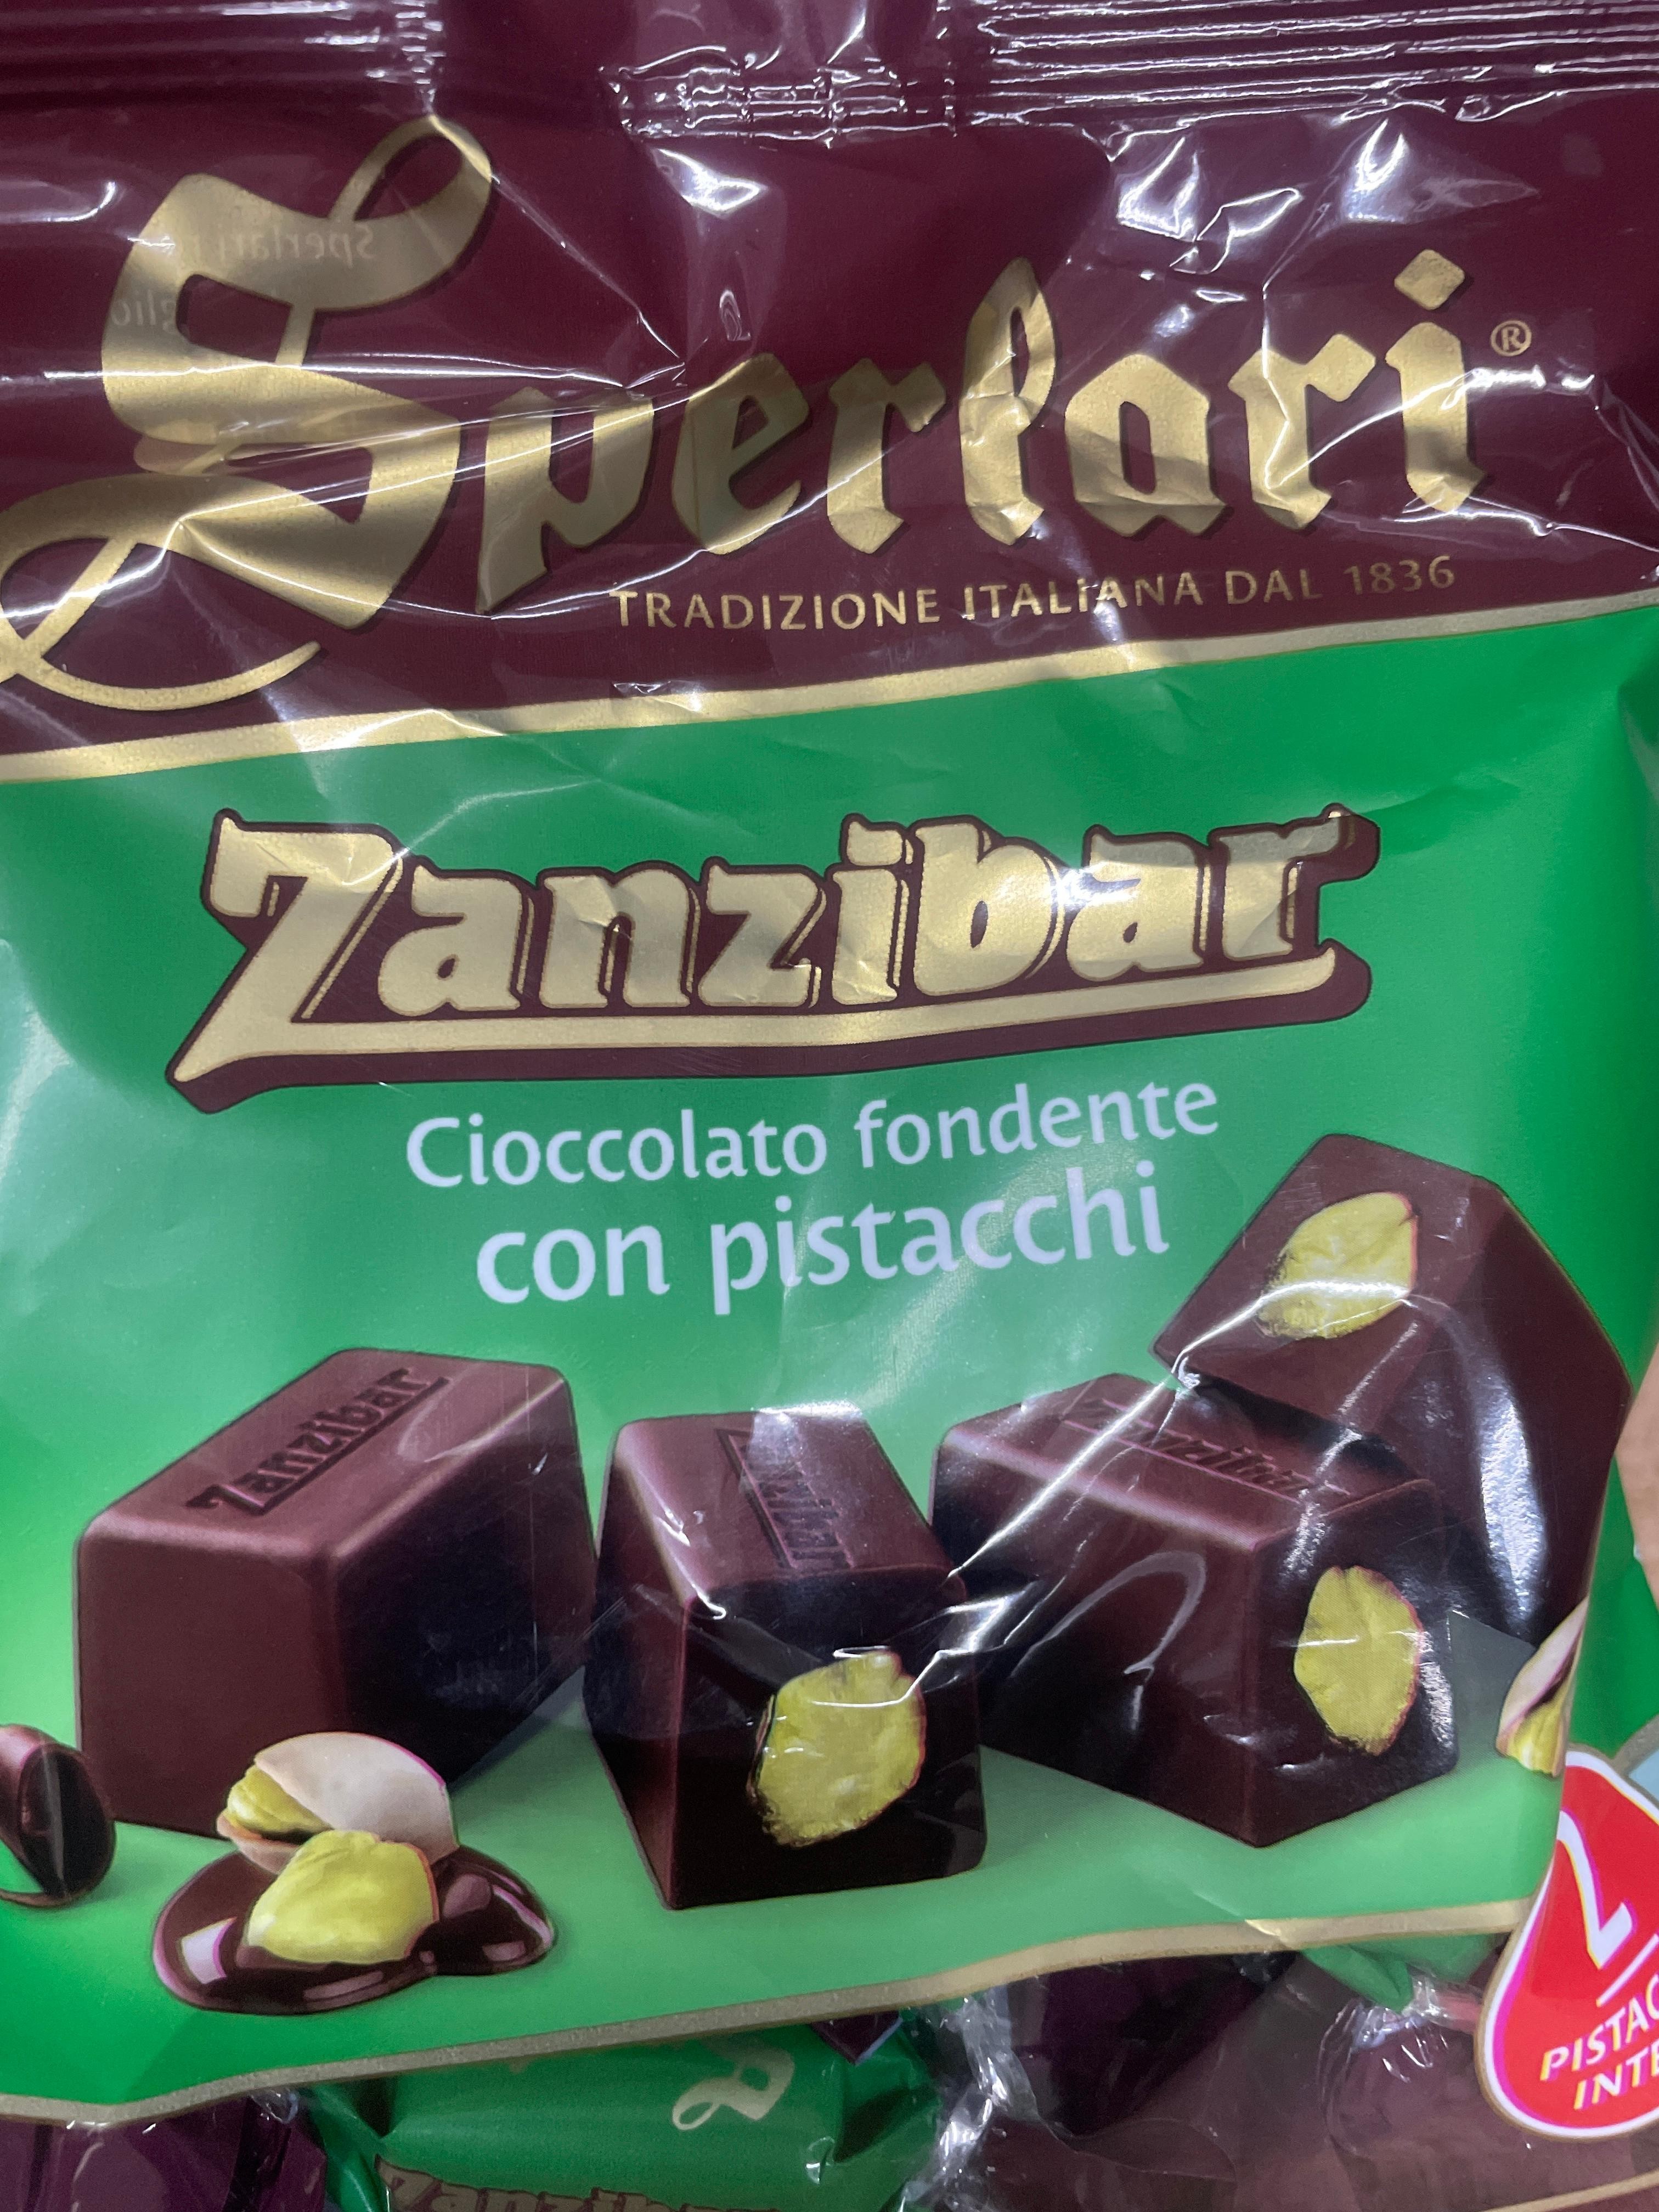 Sperlari, Zanzibar dark chocolate bites w/pistachios 4.12 oz